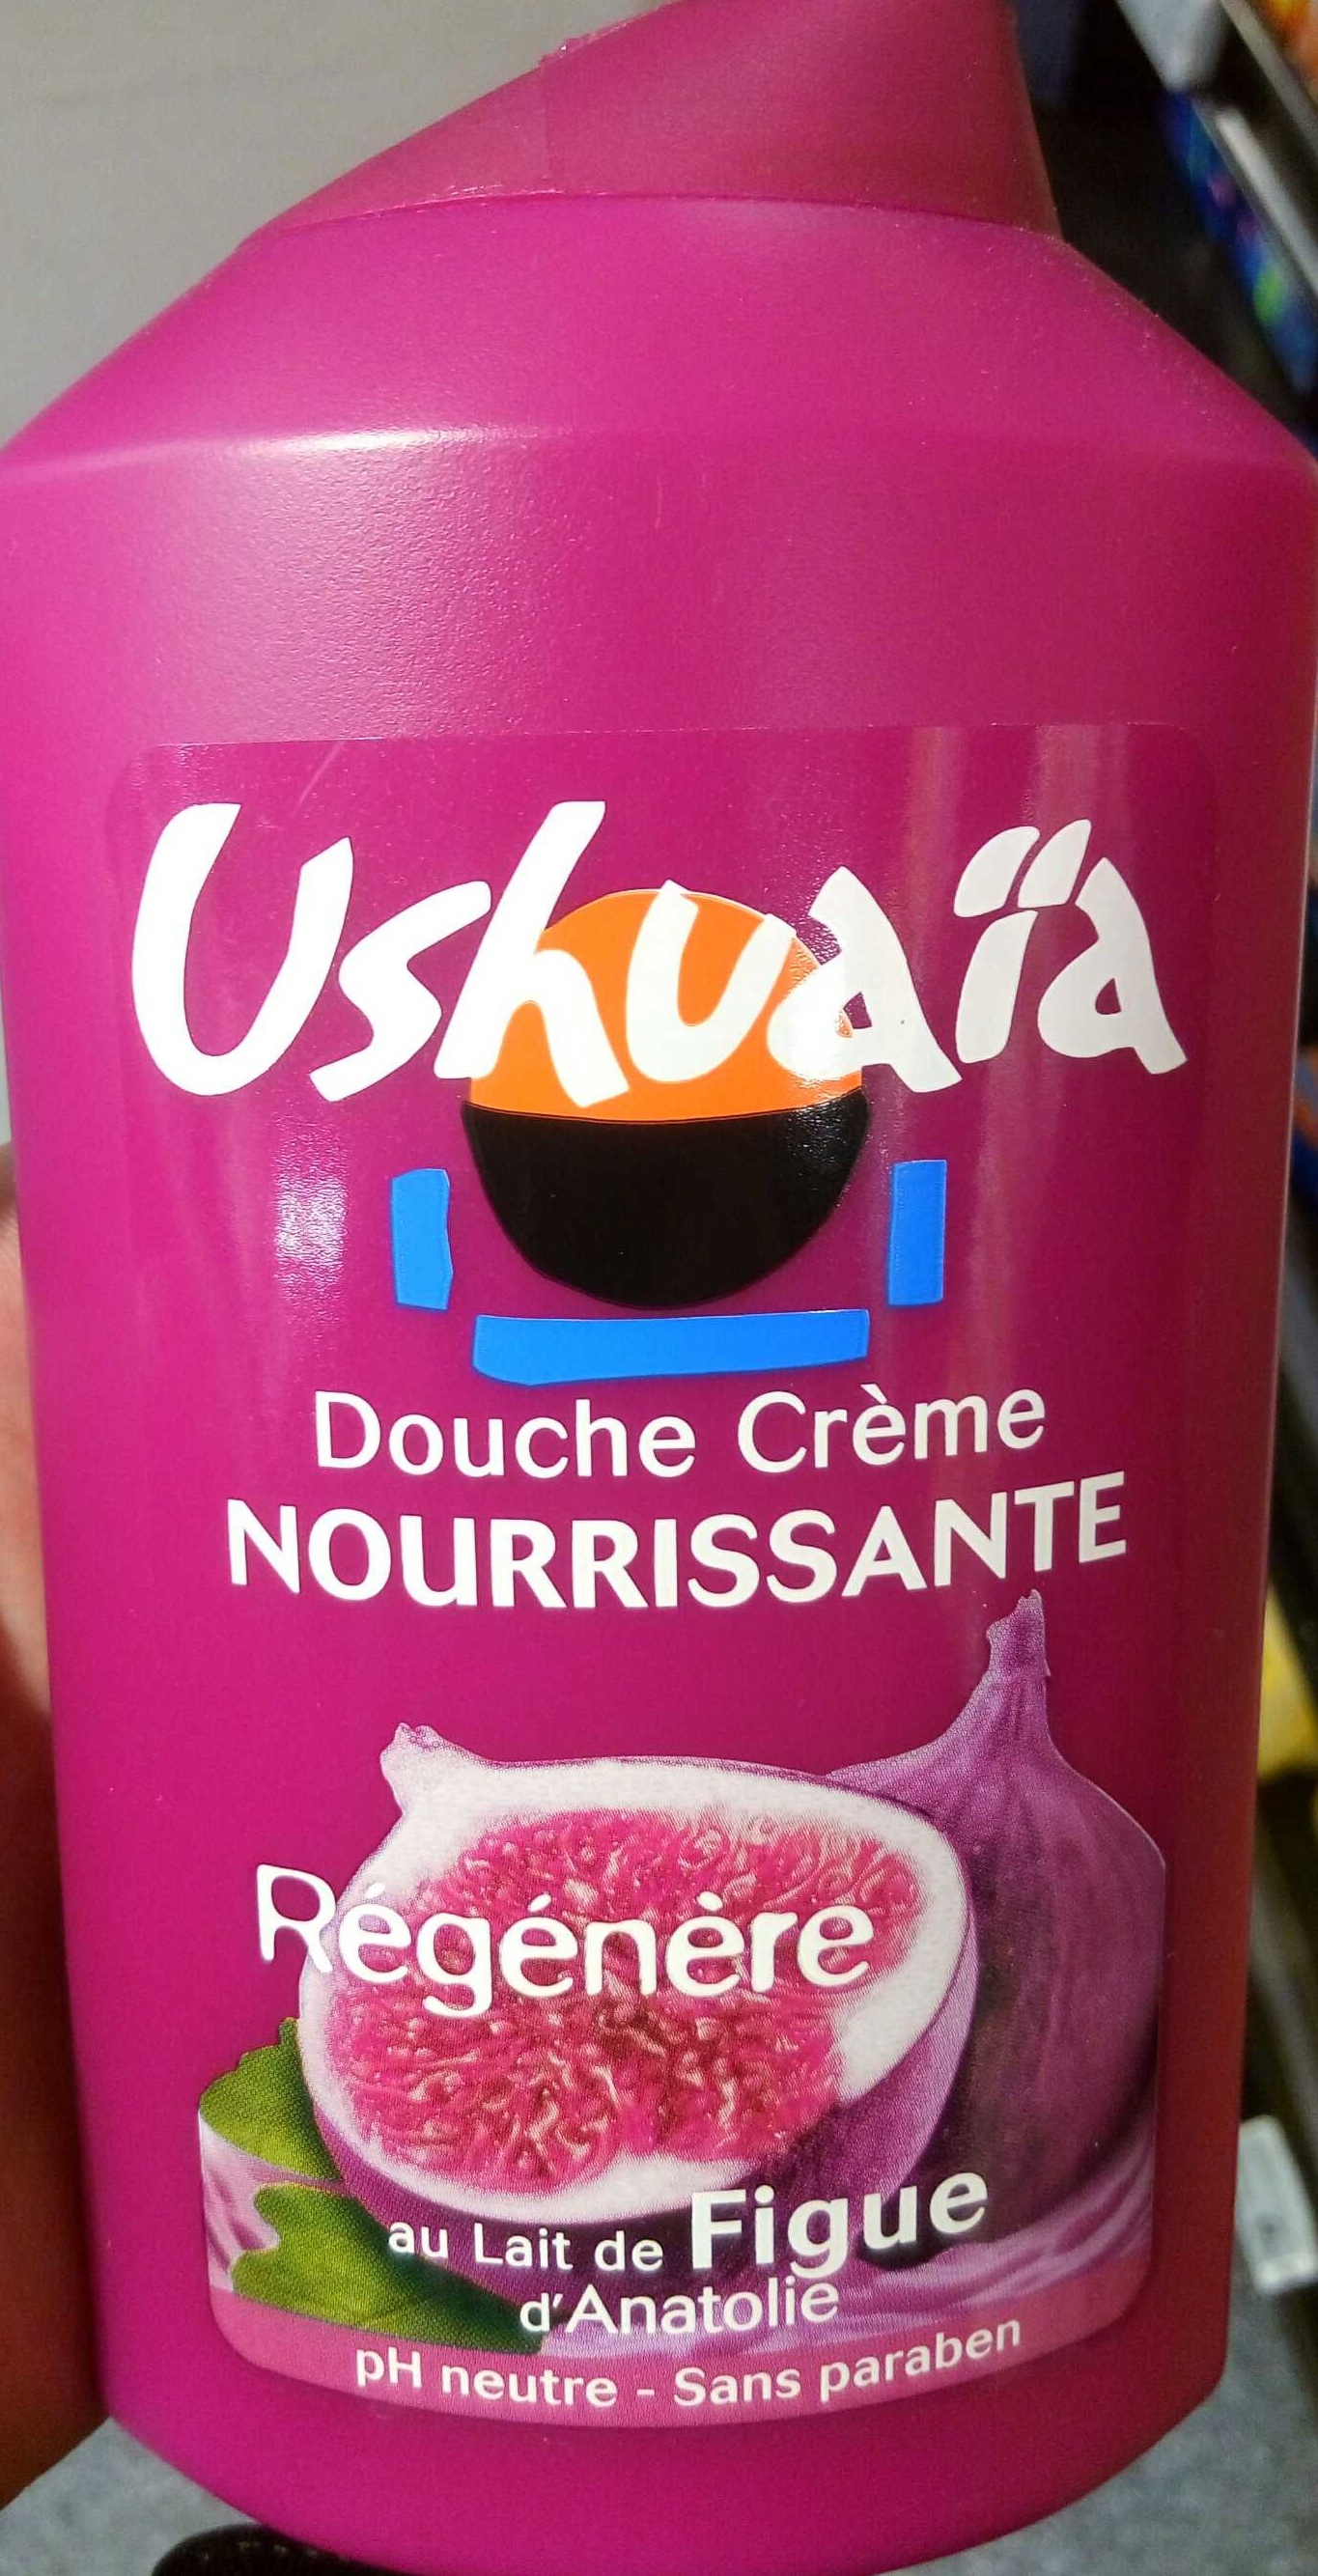 Douche Crème Nourissante au lait de Figue d'Anatolie - Produkt - fr